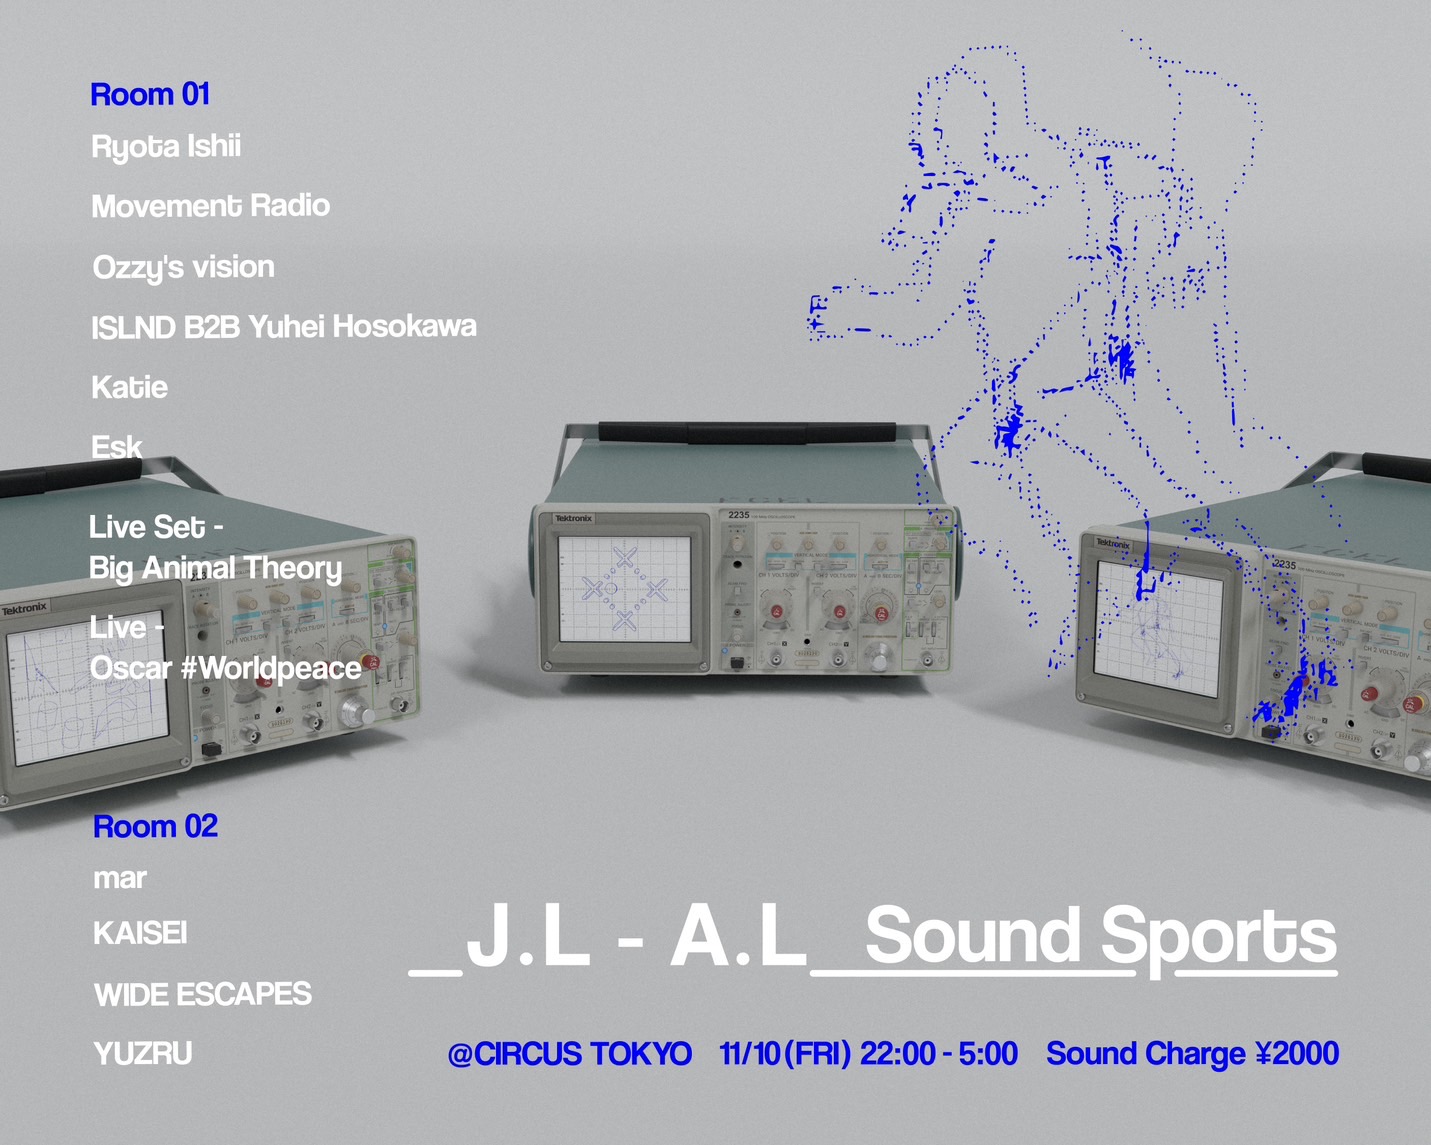 J.L – A.L Sound Sports